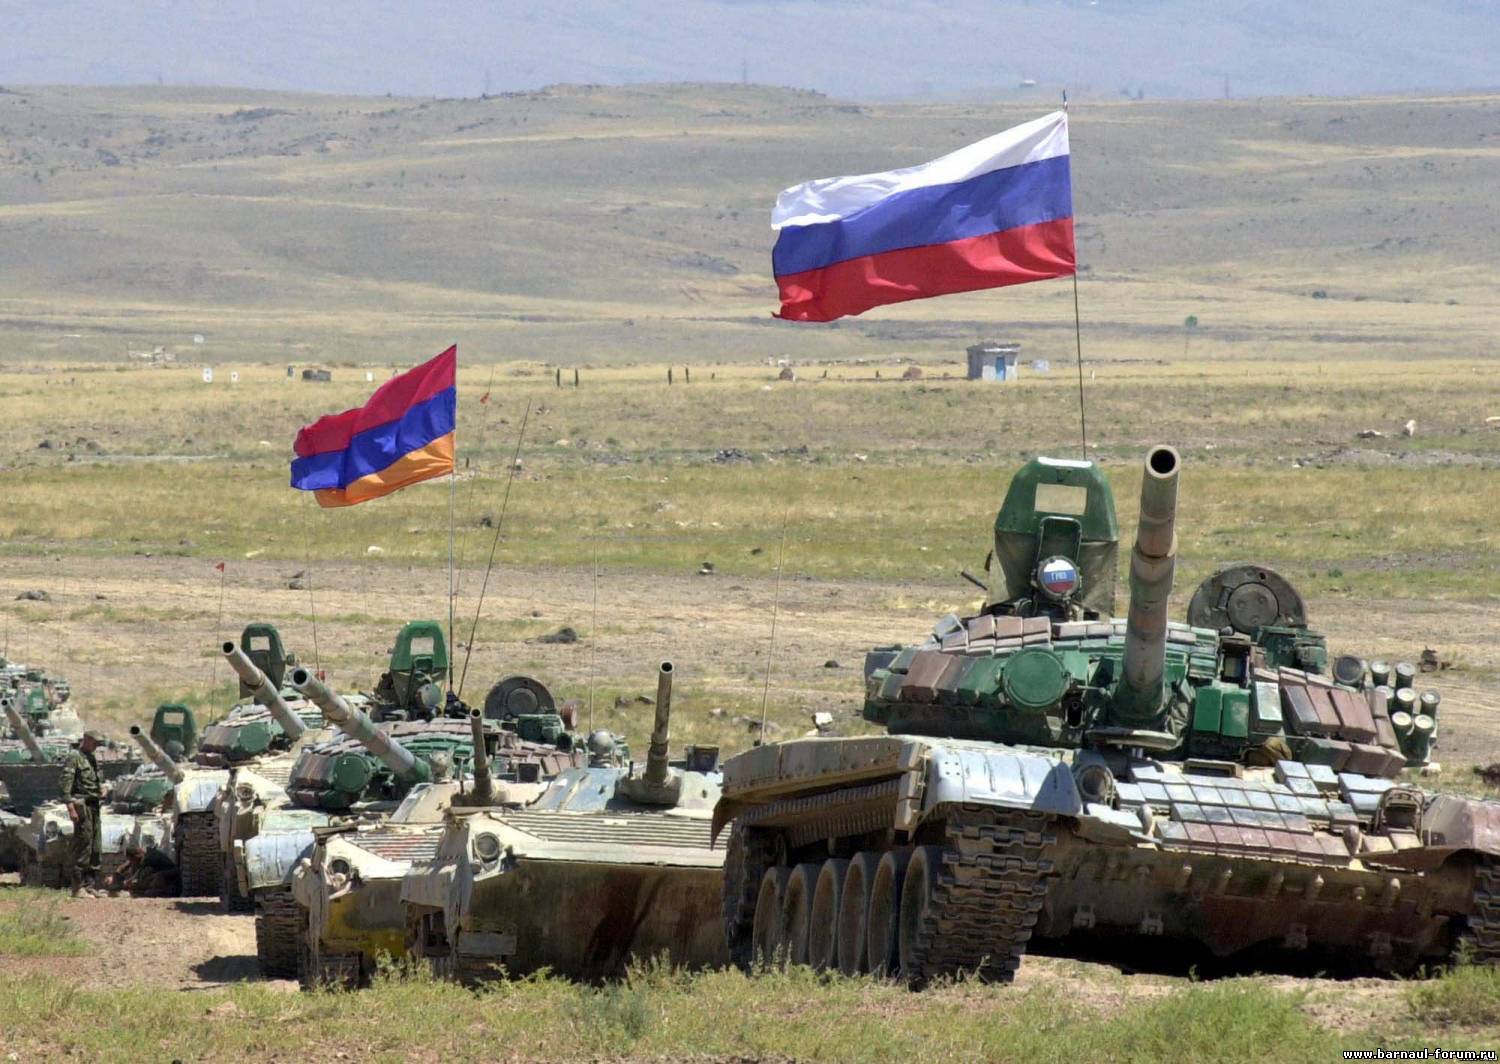 Ermenistan’daki iktidar değişimi Rusya ile askeri teknik işbirliğini etkilemedi